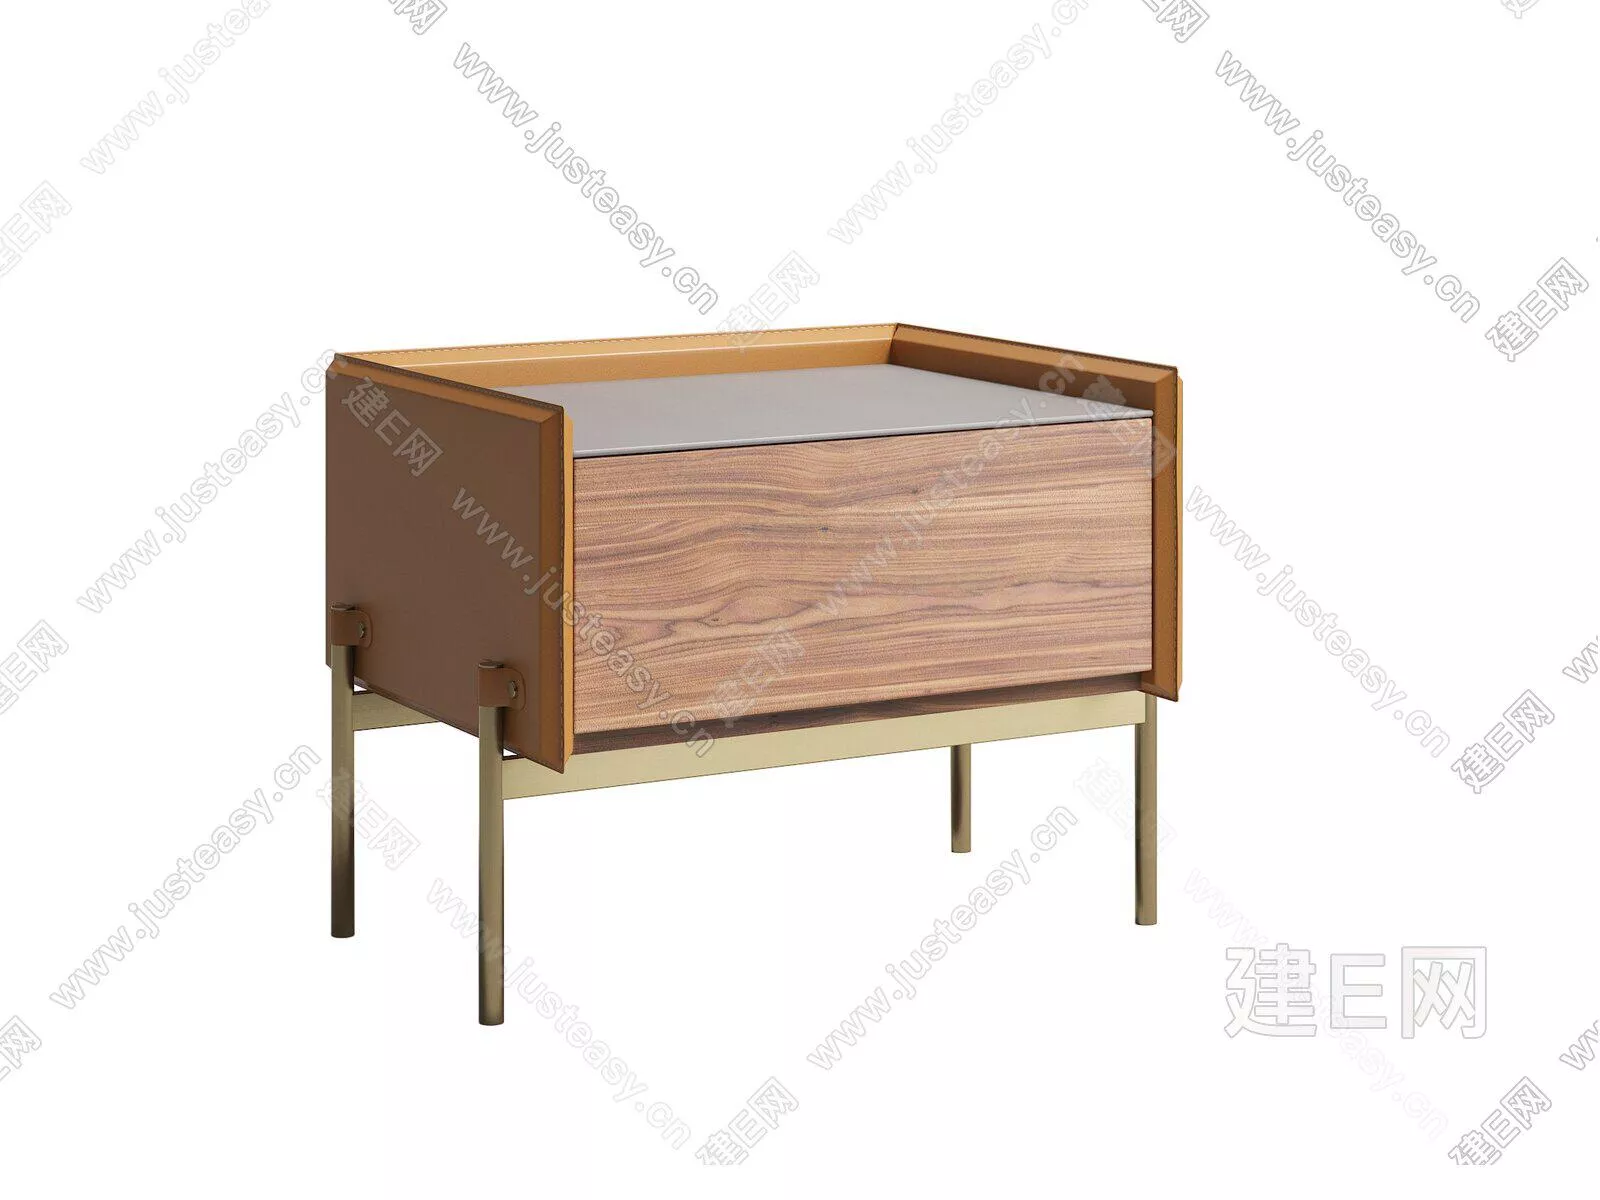 NORDIC BEDSIDE TABLE - SKETCHUP 3D MODEL - ENSCAPE - 104941667